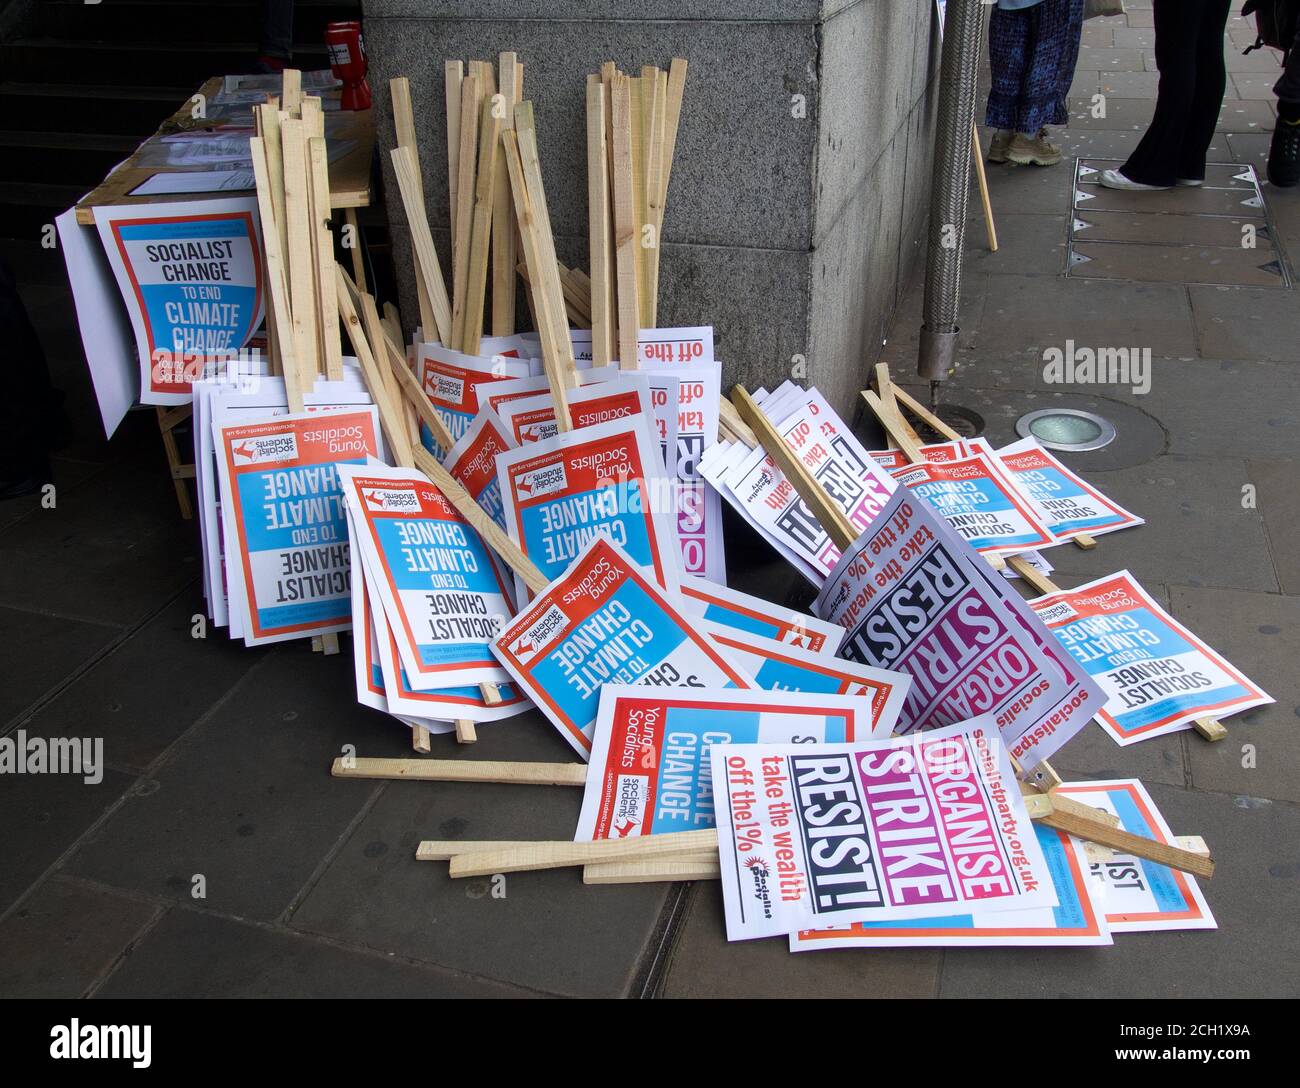 De jeunes socialistes brandissent des banderoles à la gare de westminster pour le climat de Londres Grève 2020 Banque D'Images